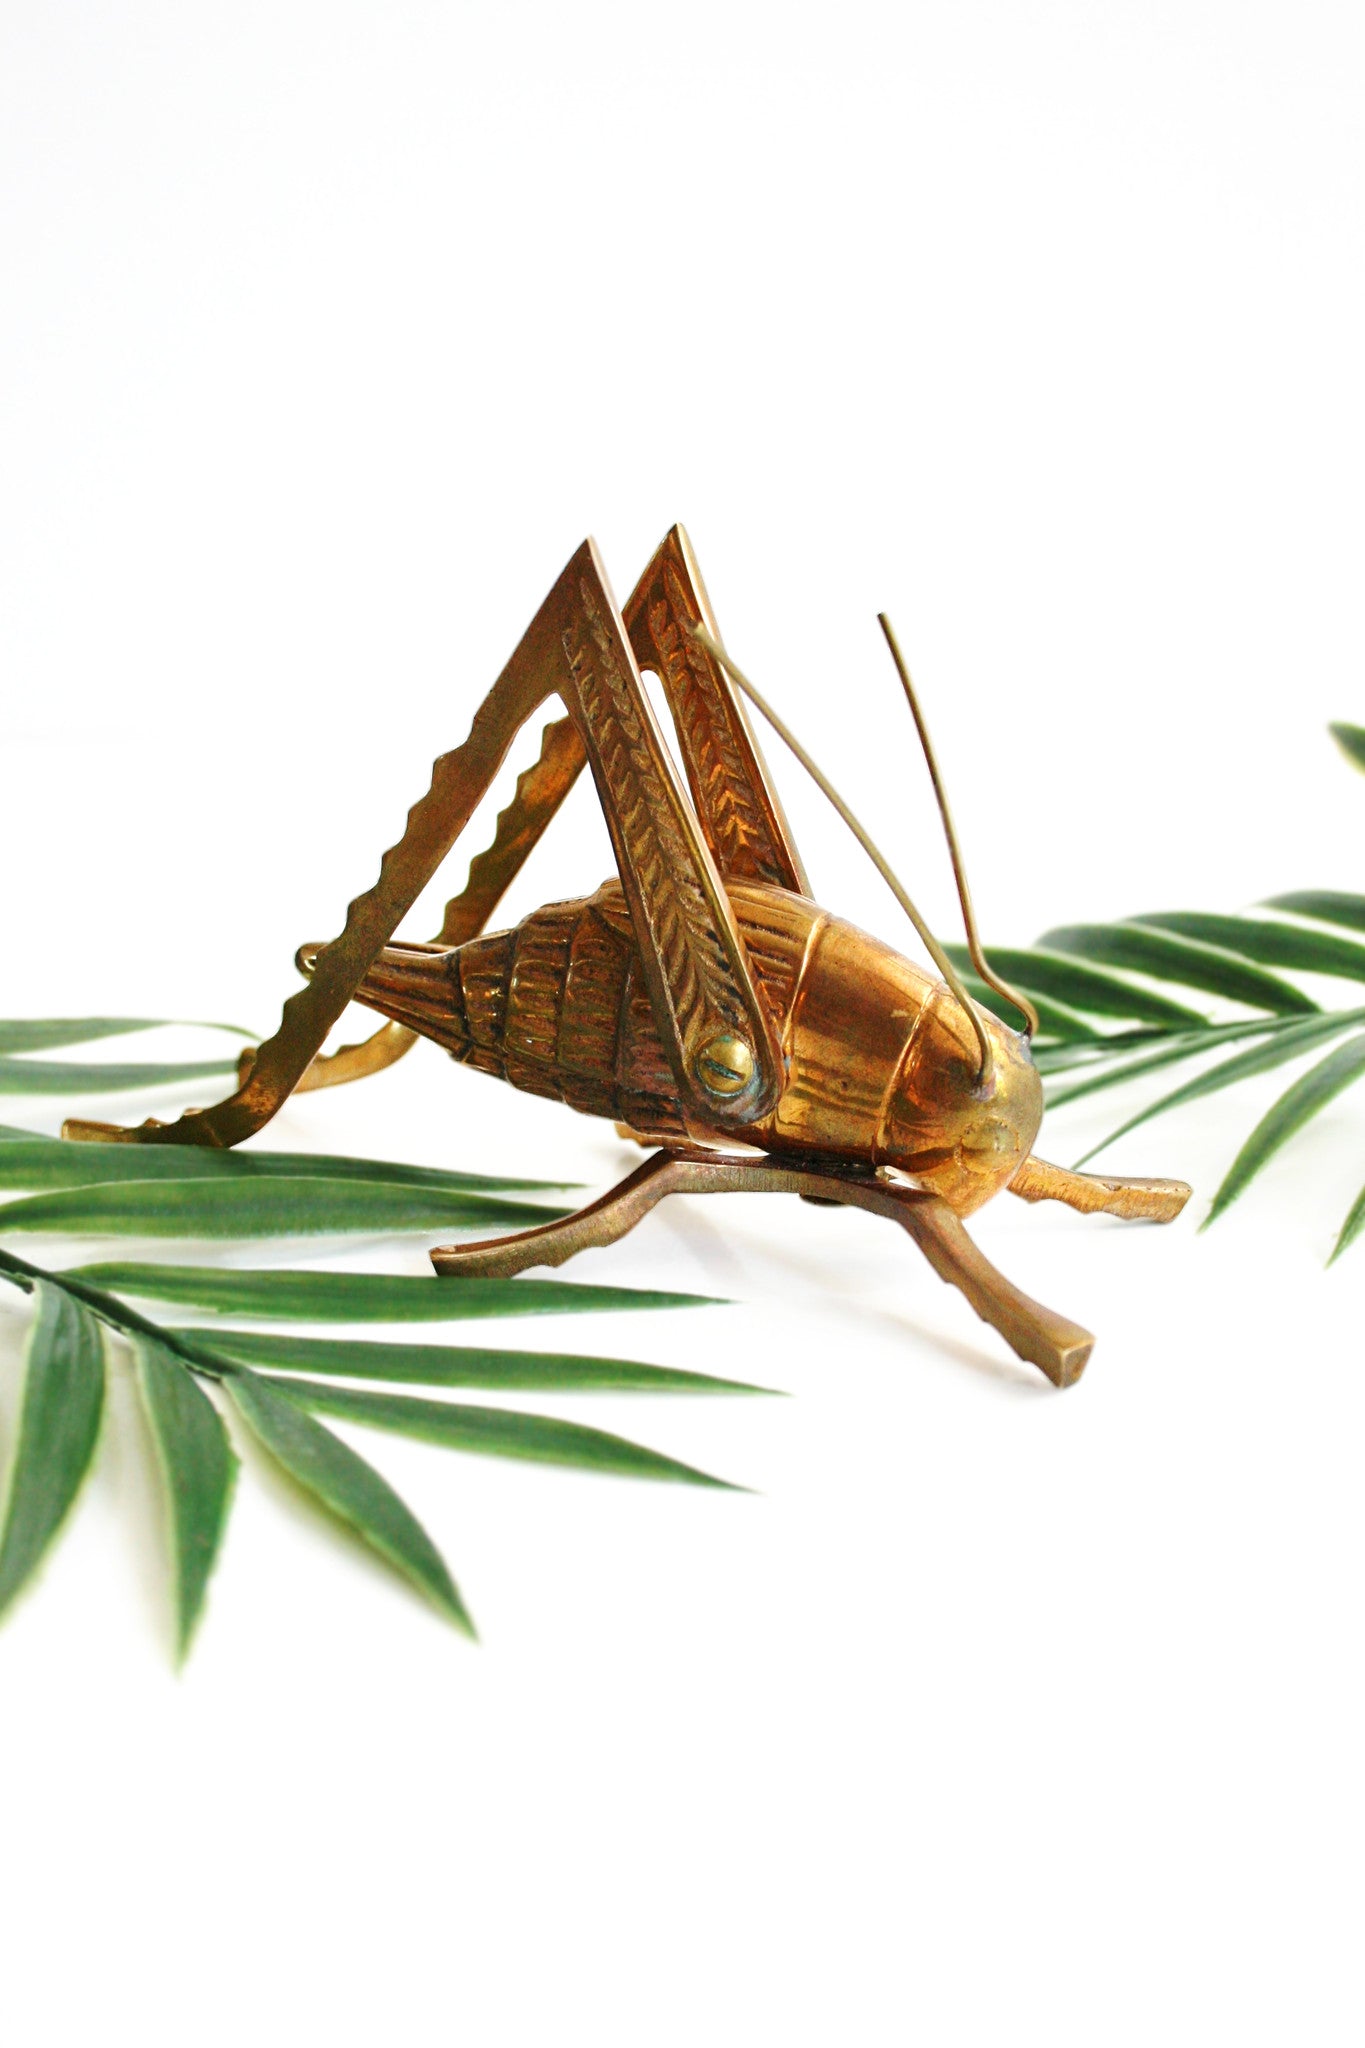 SOLD - Vintage Solid Brass Grasshopper / Mid Century Brass Cricket Figurine